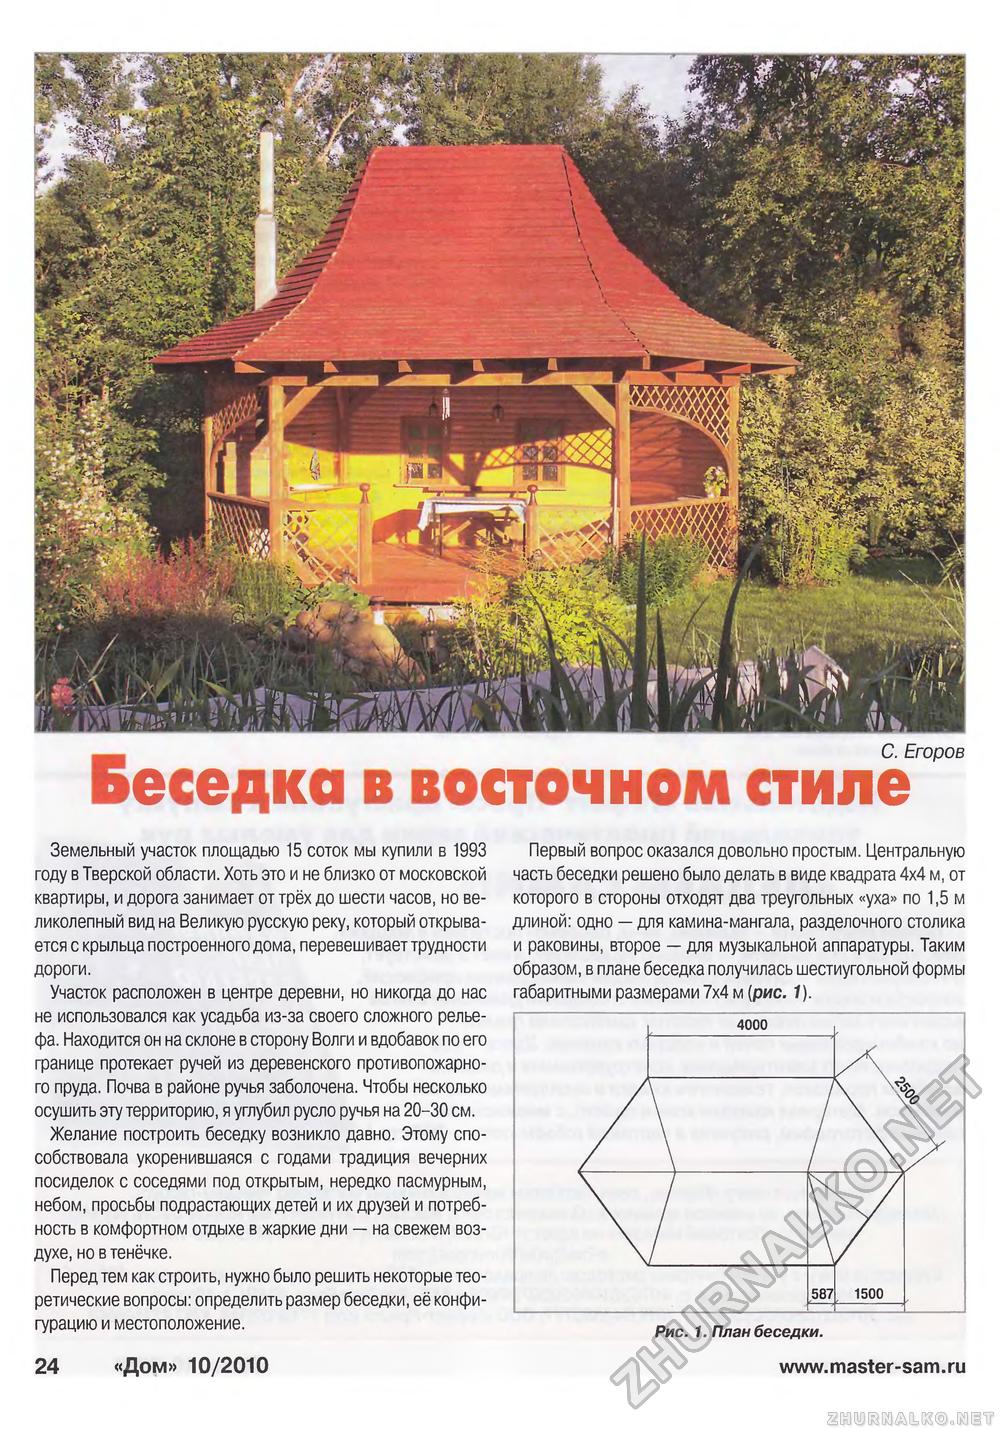 Дом 2010-10, страница 24